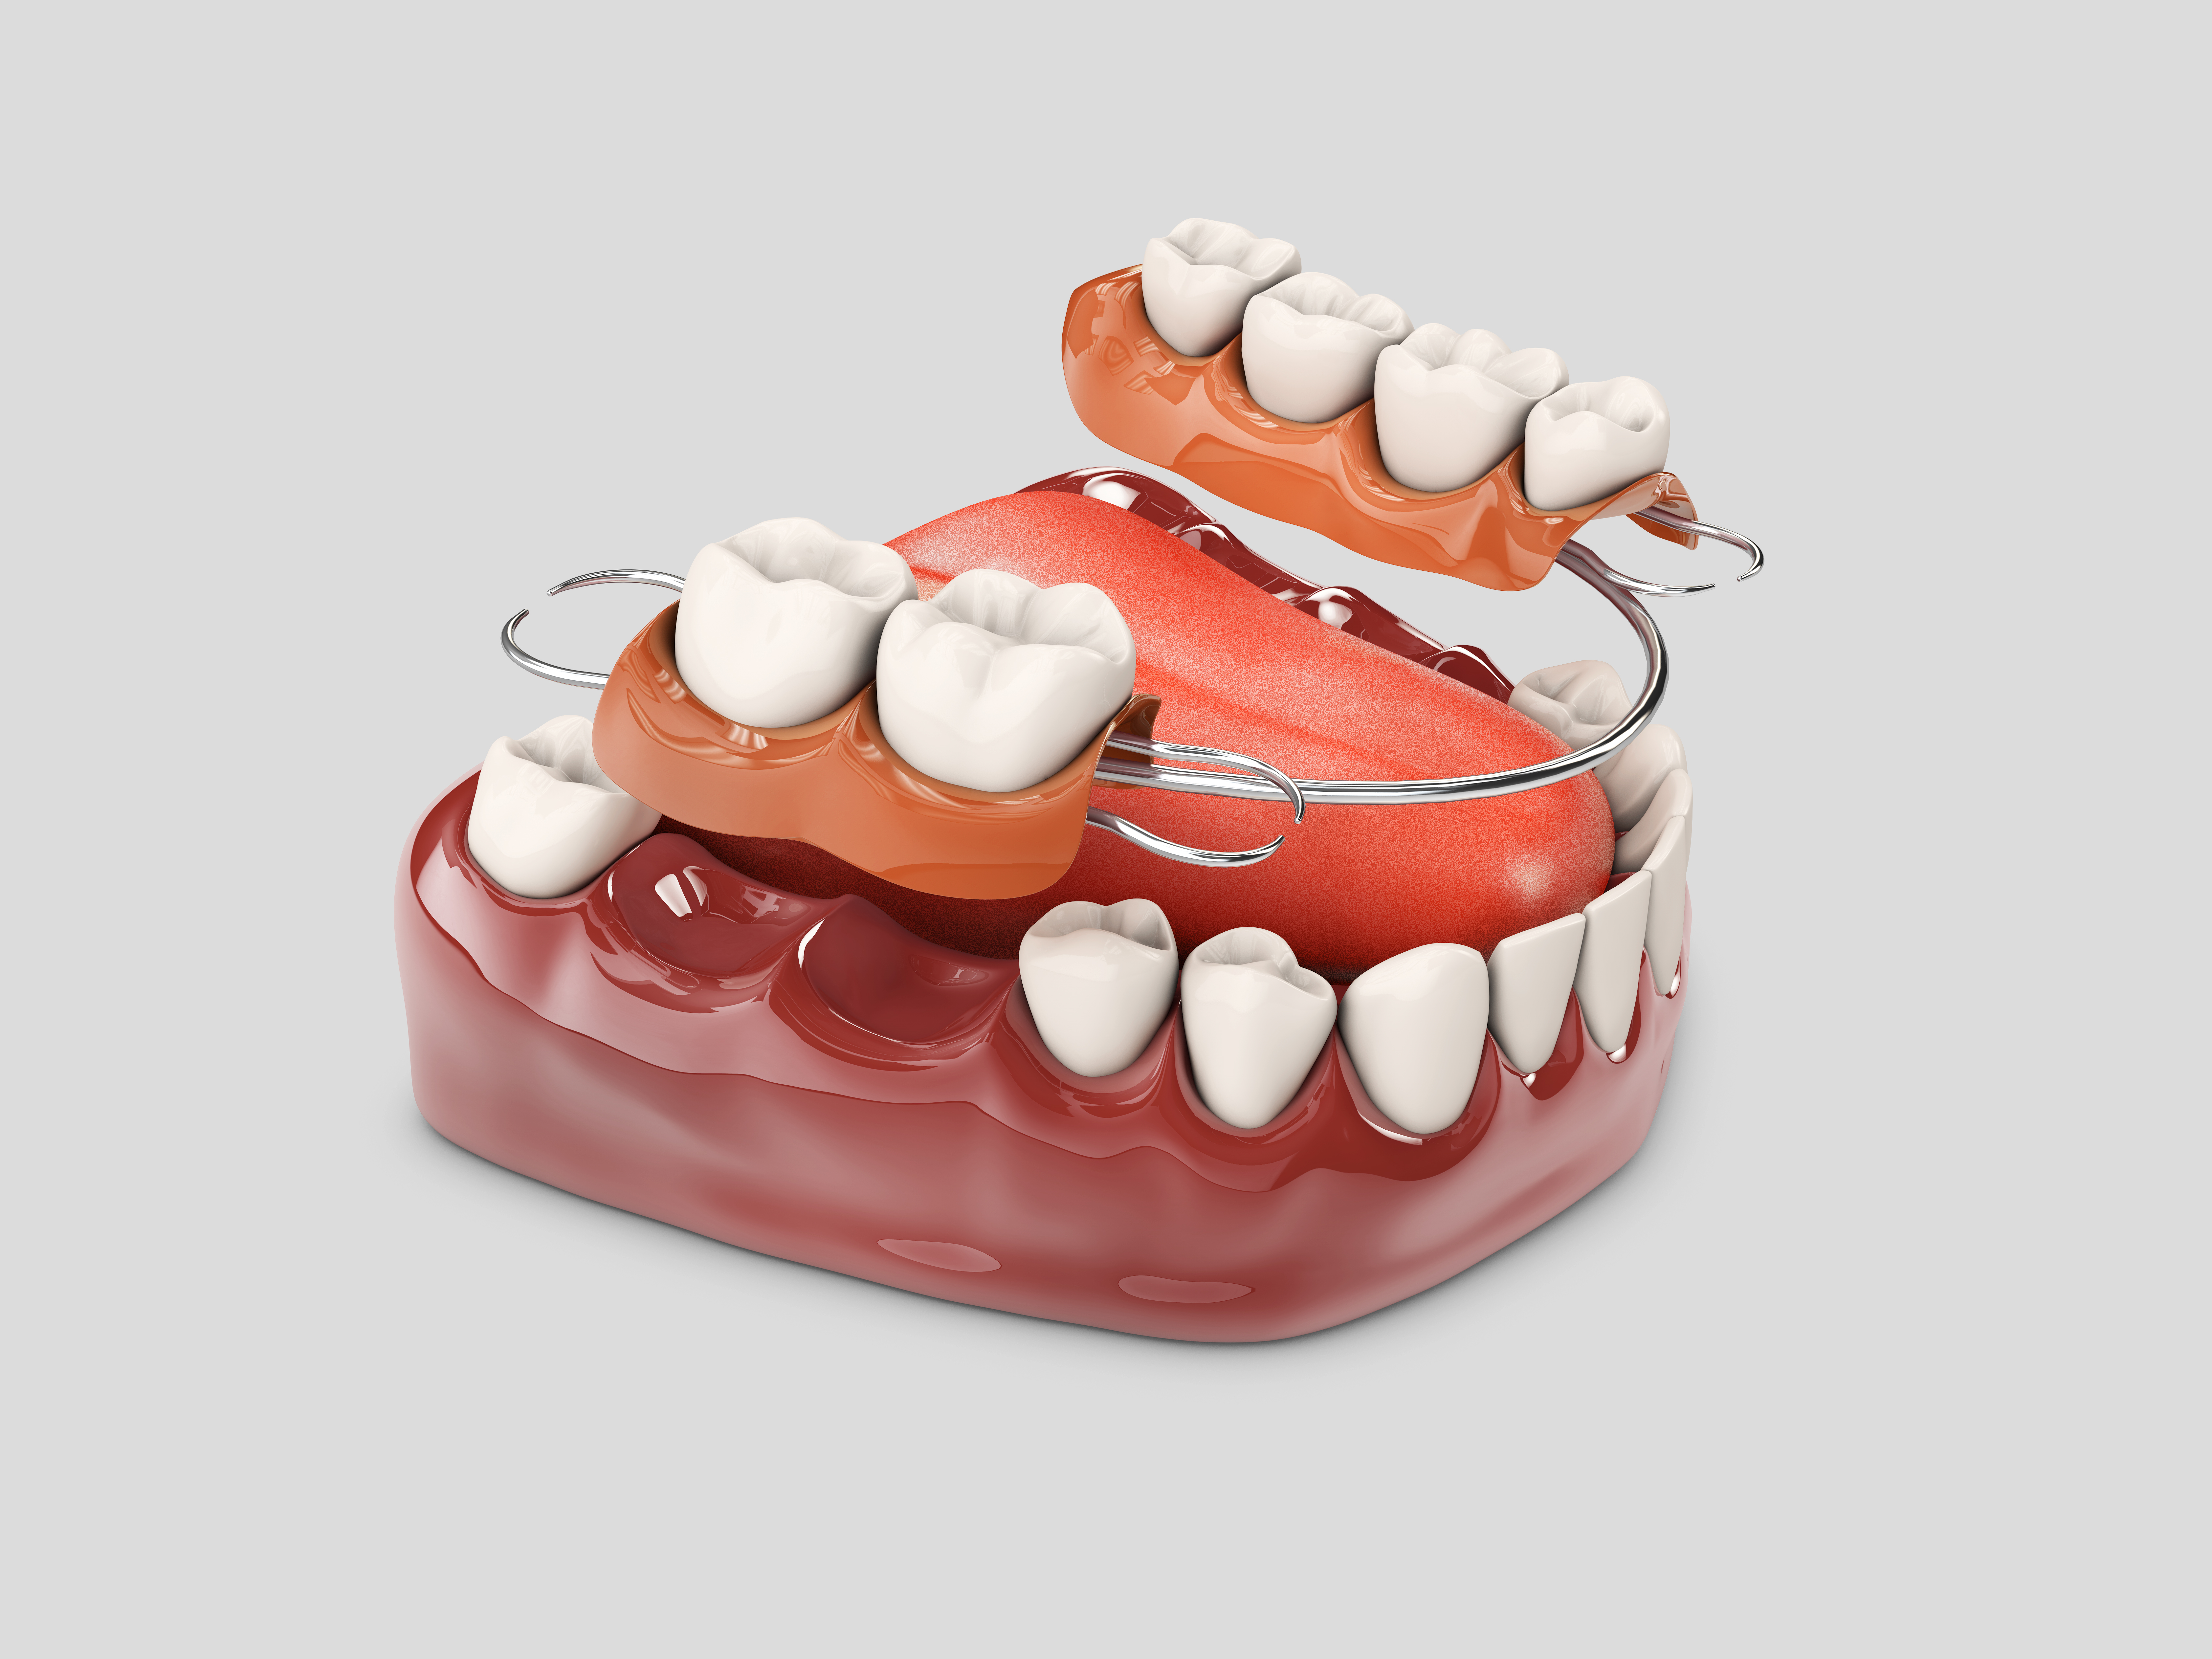 Протезирование зубов — доступно и качественно!